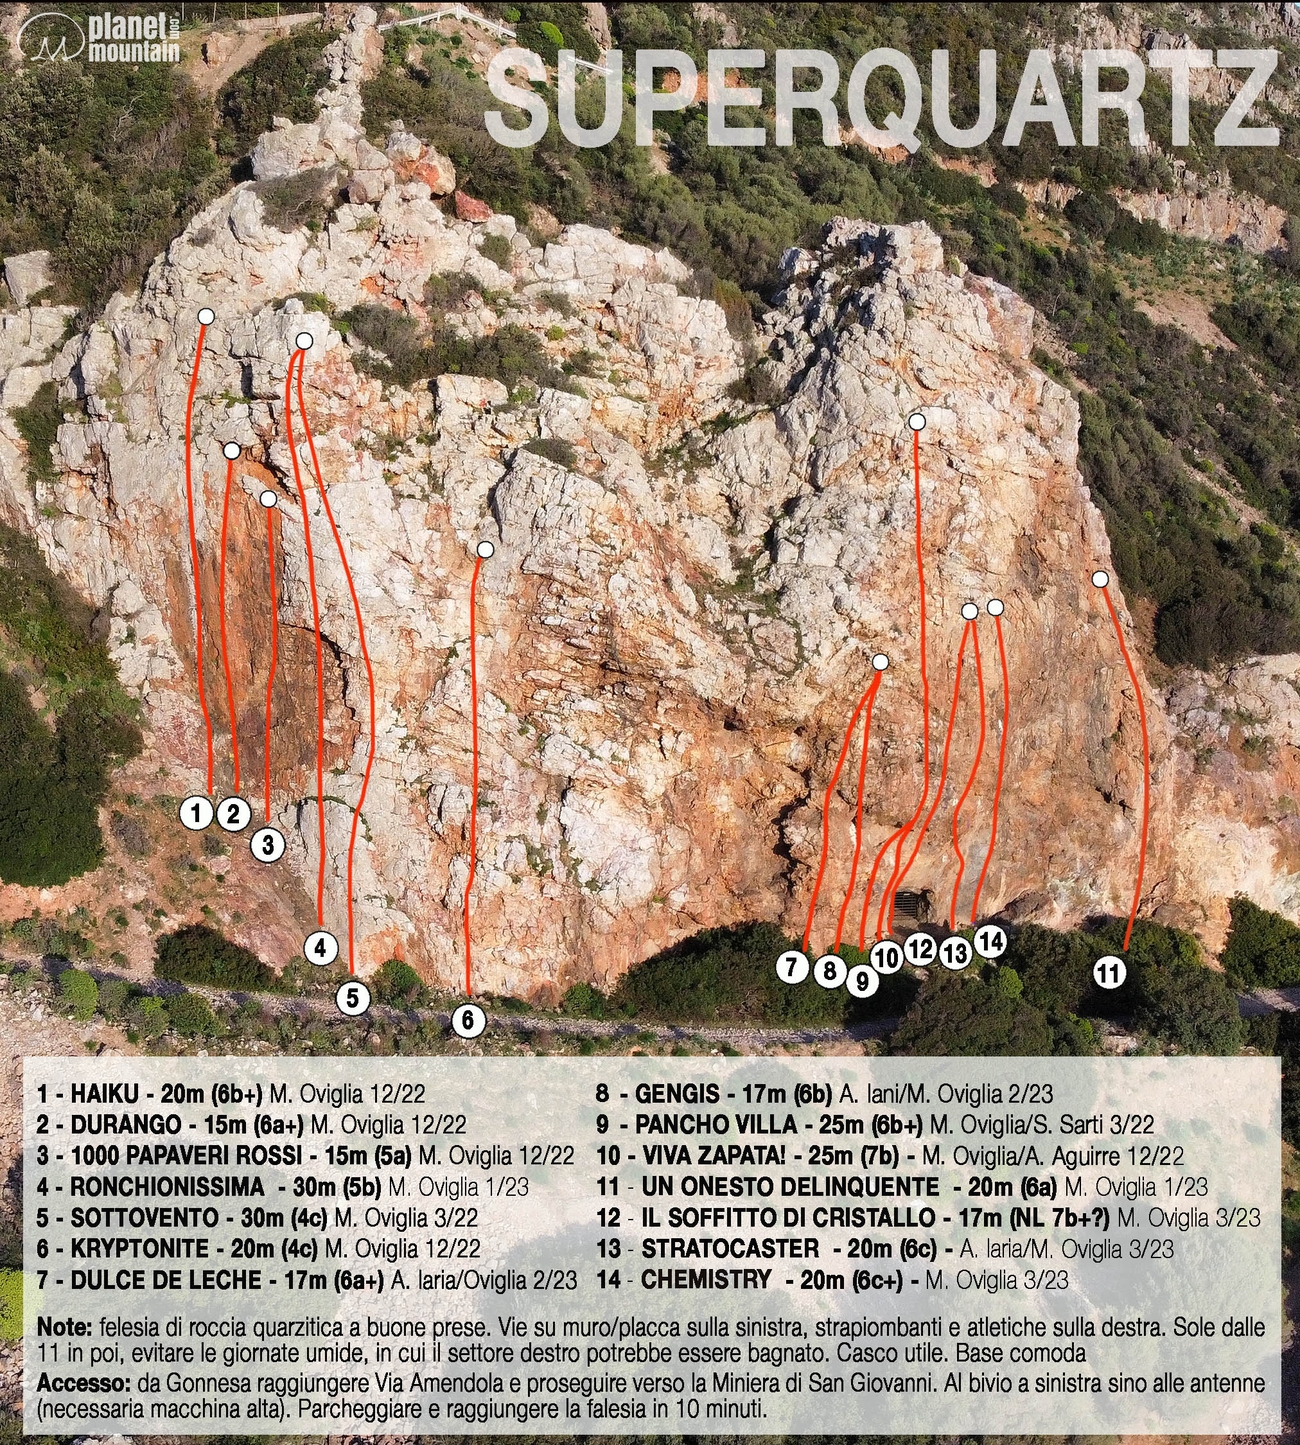 Superquartz, Sardinia